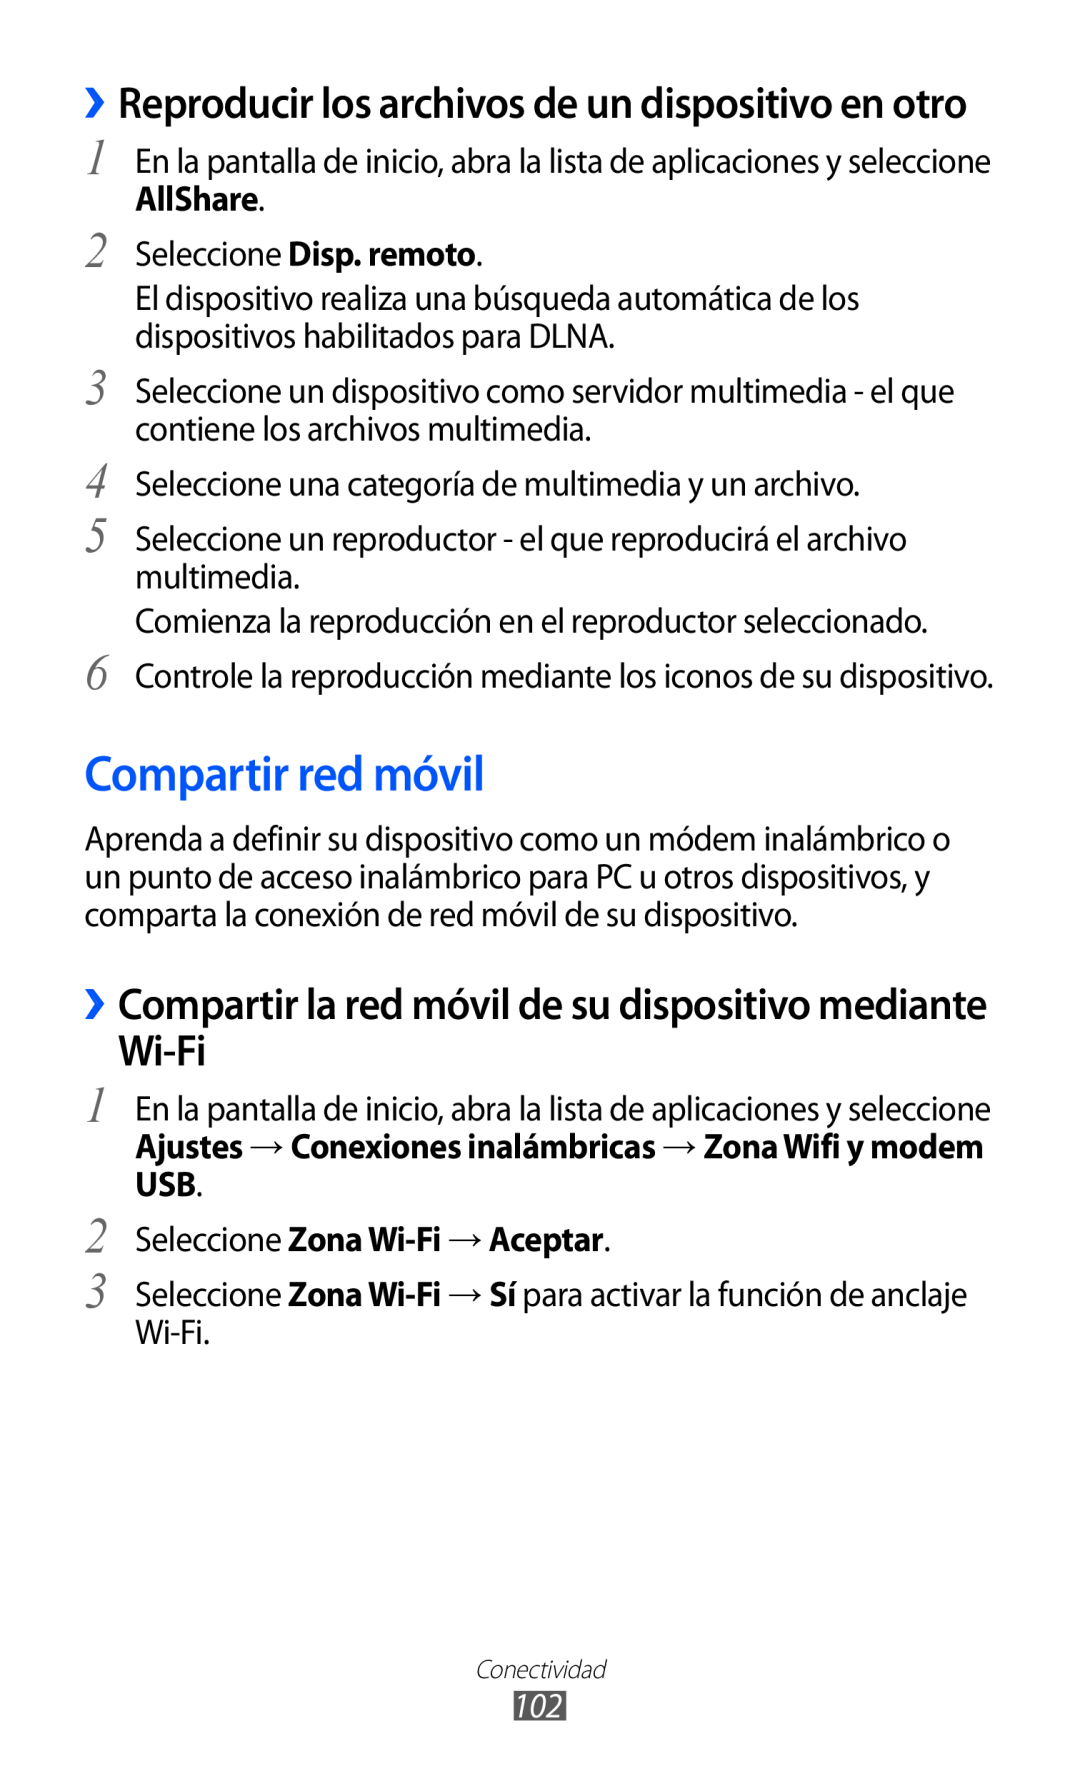 Samsung GT-S6500ZYDVDP manual Compartir red móvil, Wi-Fi, ››Reproducir los archivos de un dispositivo en otro, AllShare 